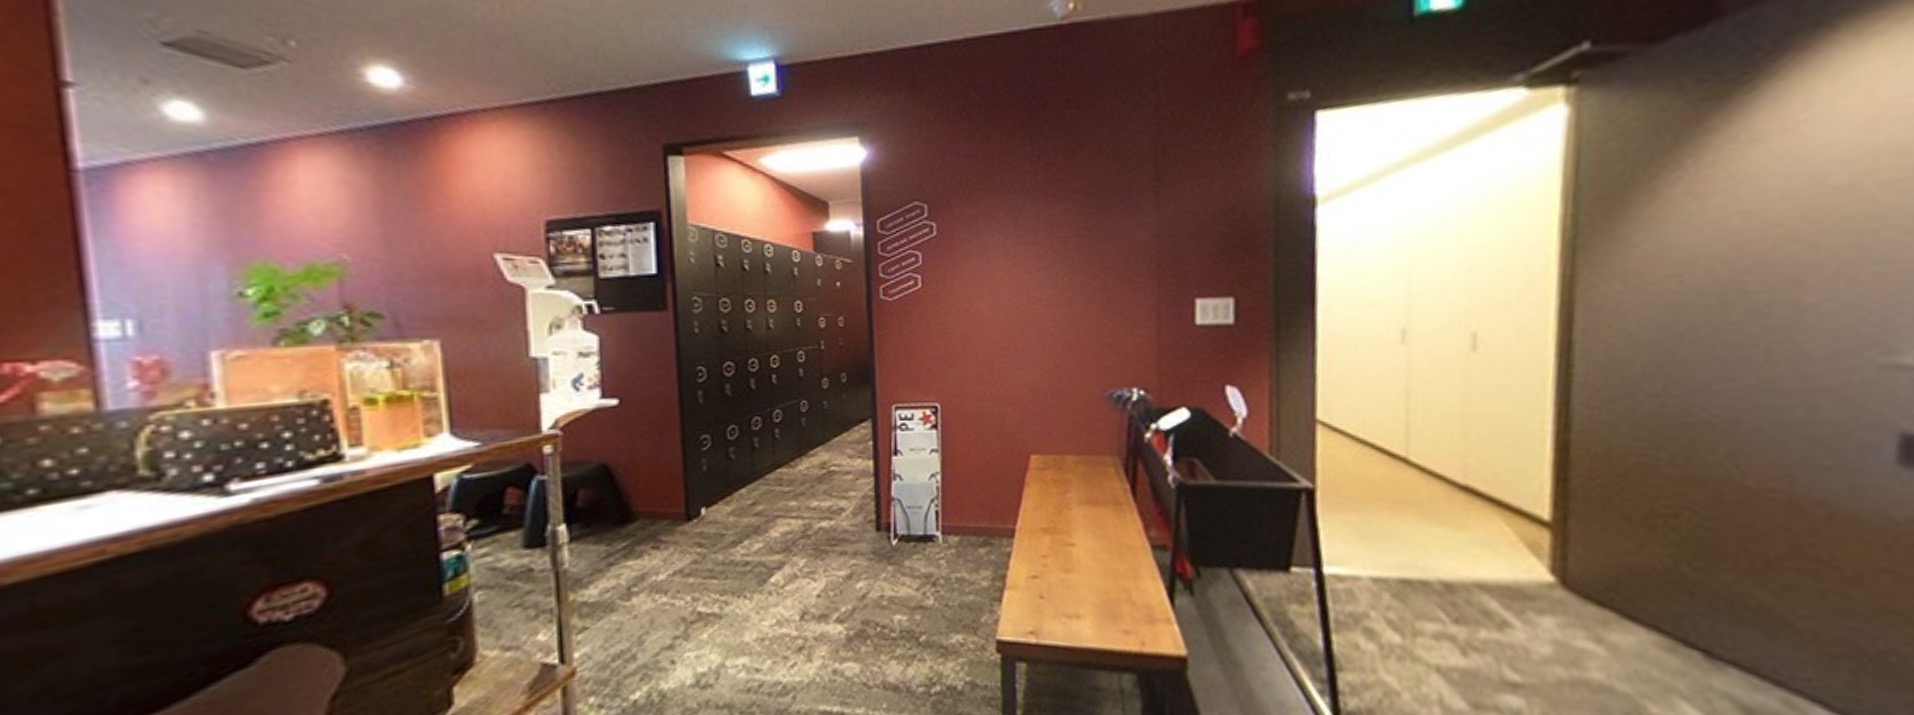 ワークスタイリング霞が関のオフィス内部の画像「ロッカー」